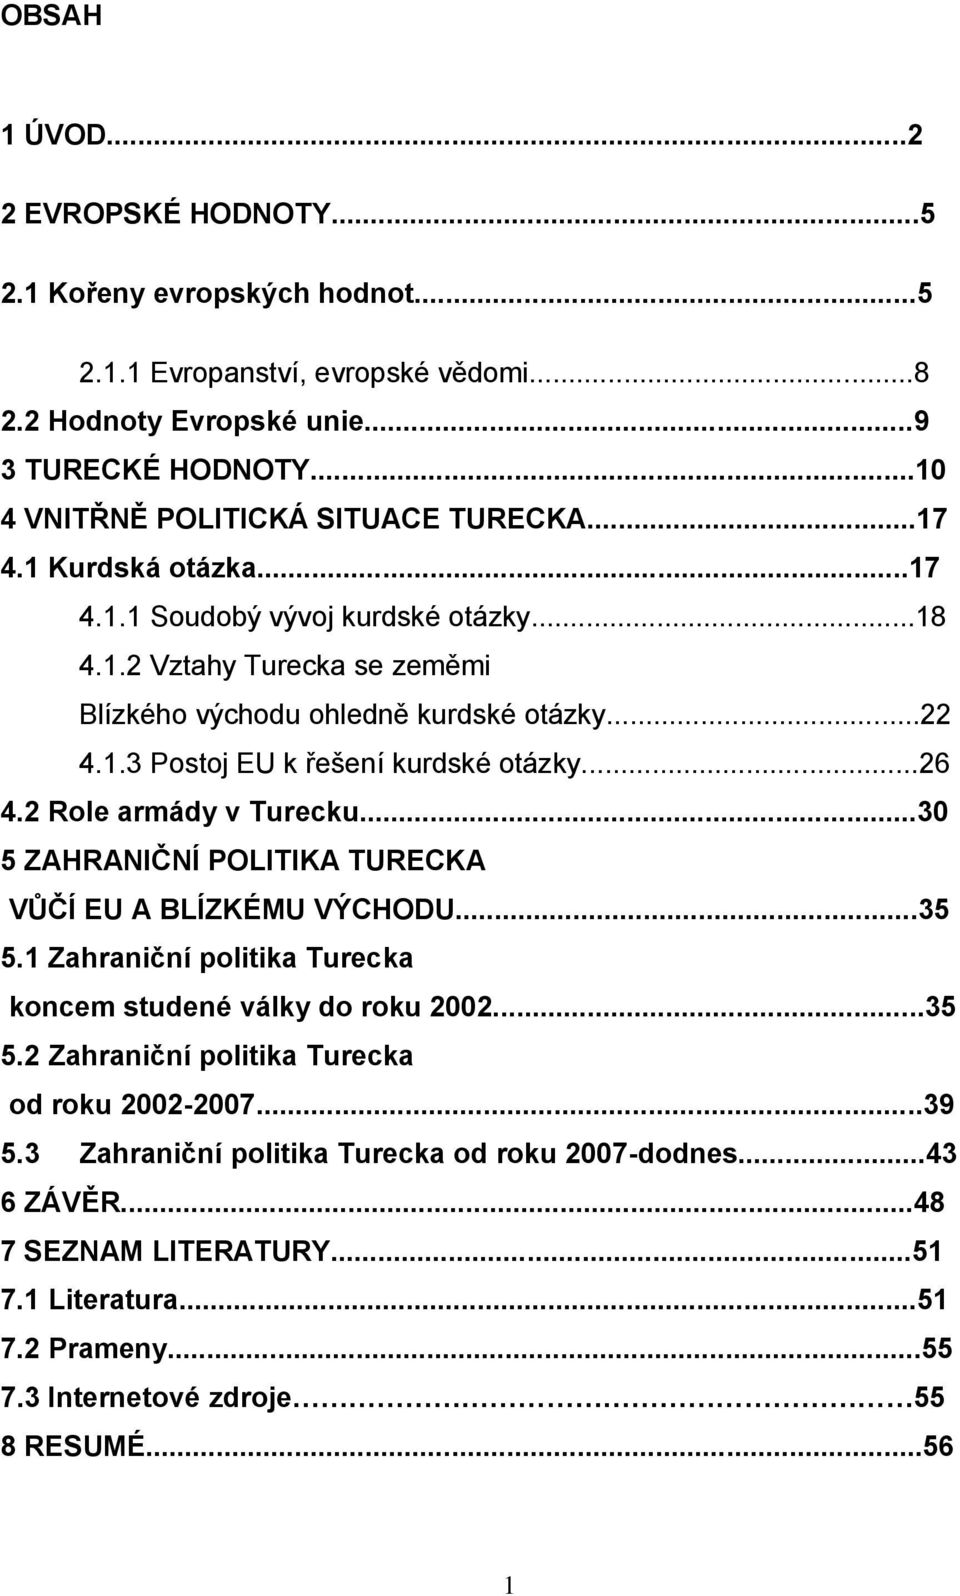 ..26 4.2 Role armády v Turecku...30 5 ZAHRANIČNÍ POLITIKA TURECKA VŮČÍ EU A BLÍZKÉMU VÝCHODU...35 5.1 Zahraniční politika Turecka koncem studené války do roku 2002...35 5.2 Zahraniční politika Turecka od roku 2002-2007.